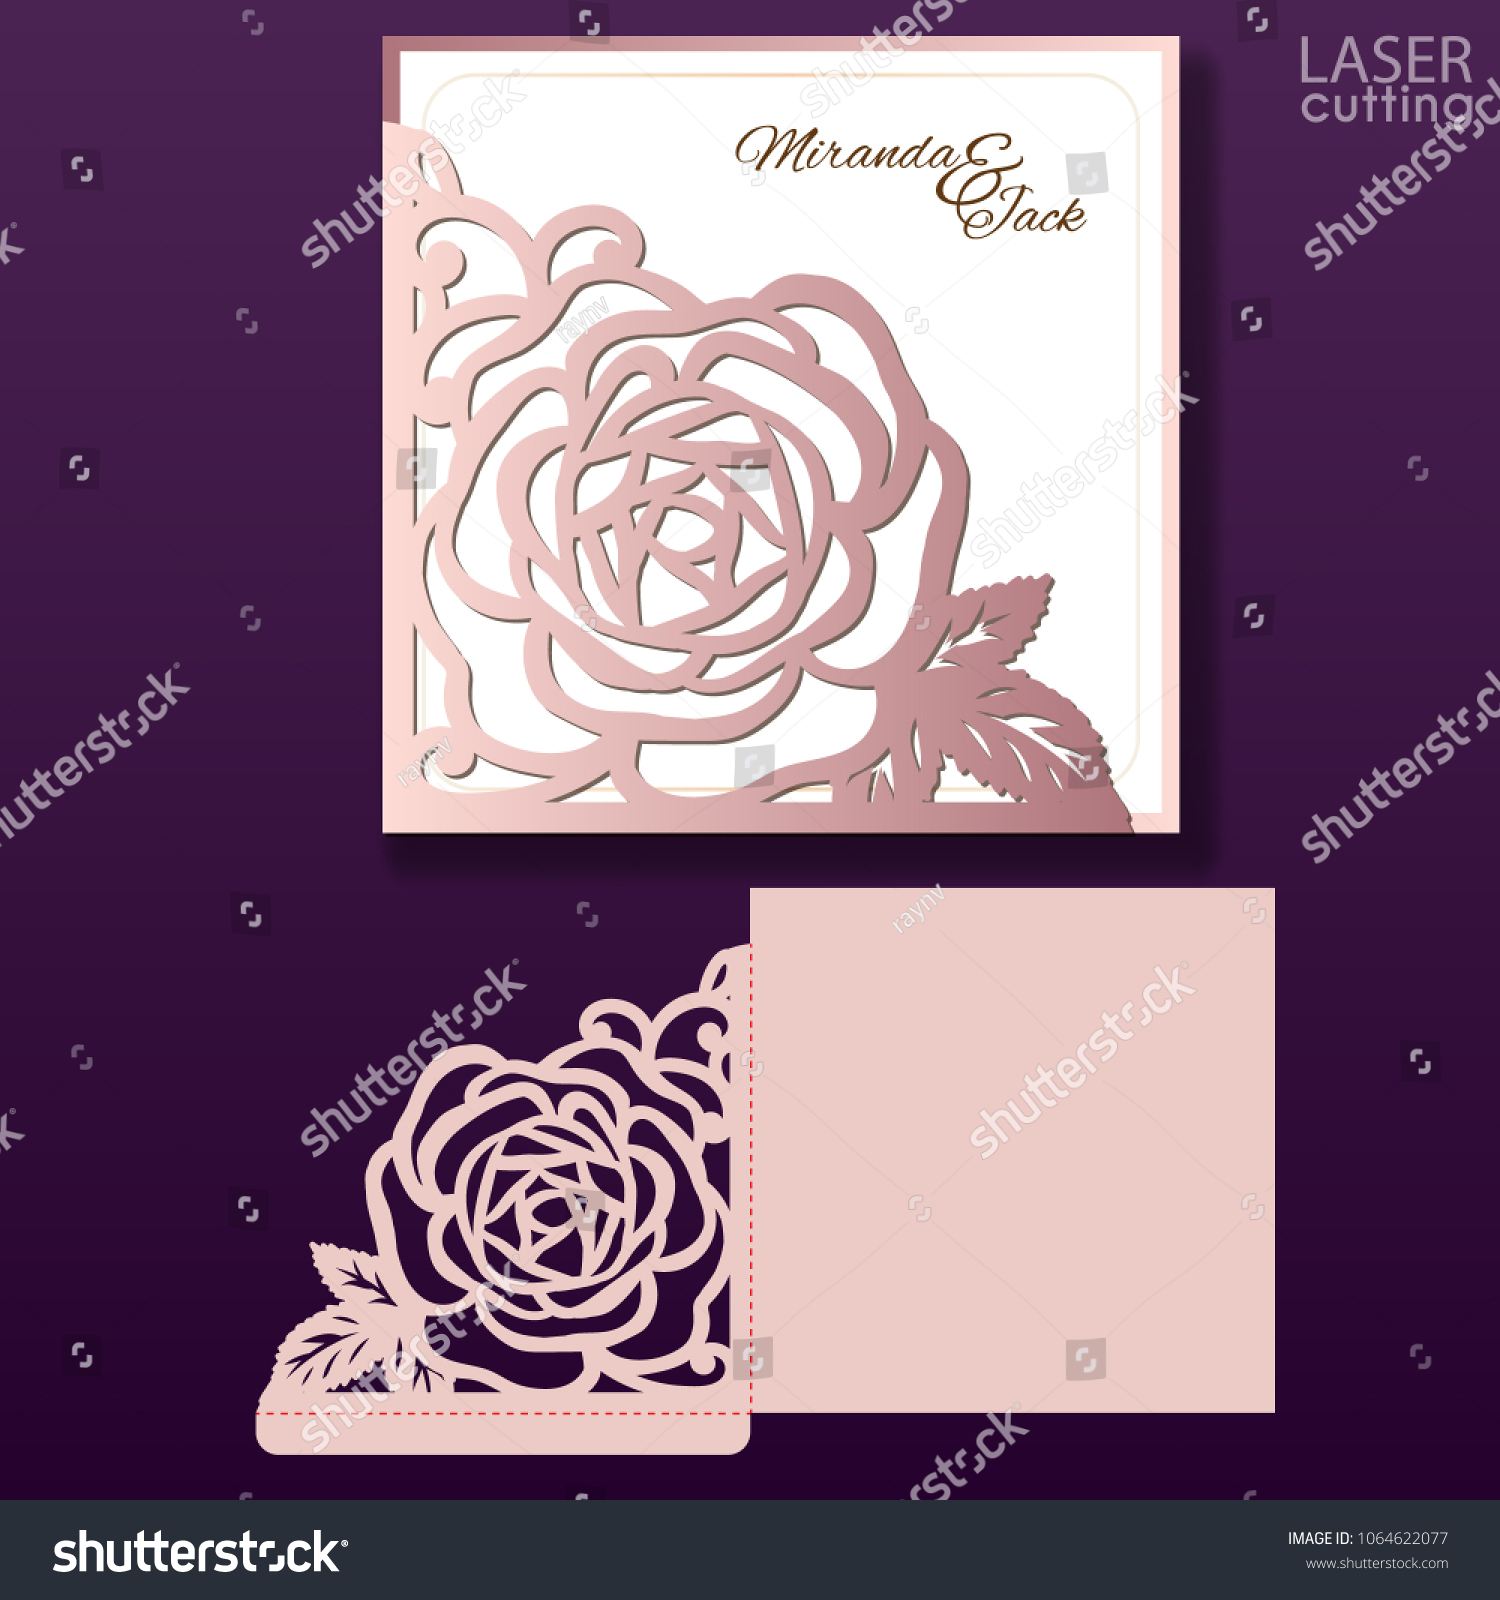 SVG of Die laser cut wedding card vector template. Invitation pocket envelope with lace corner with roses pattern. Wedding lace invitation mockup. svg